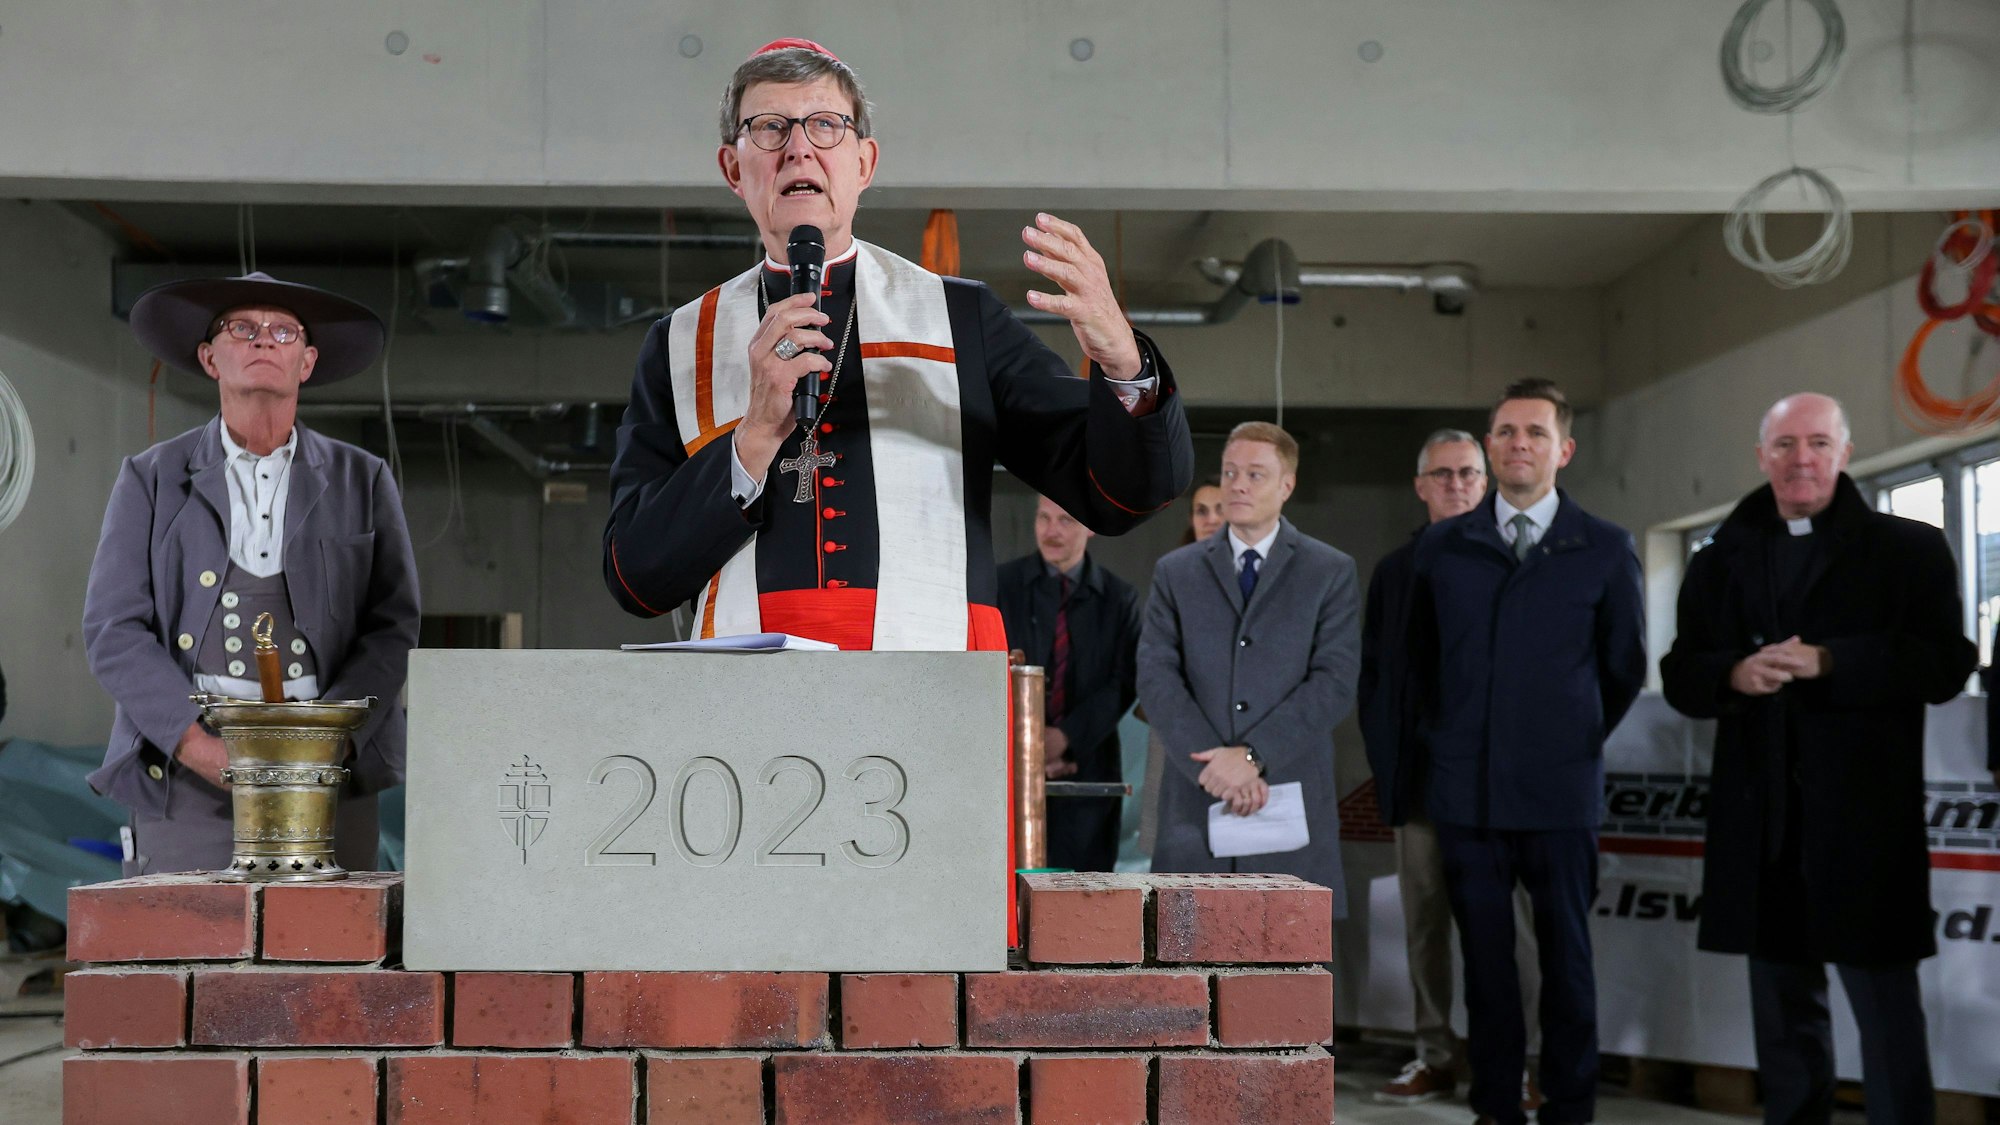 Kardinal Rainer Woelki Ende Oktober bei der Grundsteinlegung für den Erzbischöflichen Bildungscampus in Köln-Kalk.